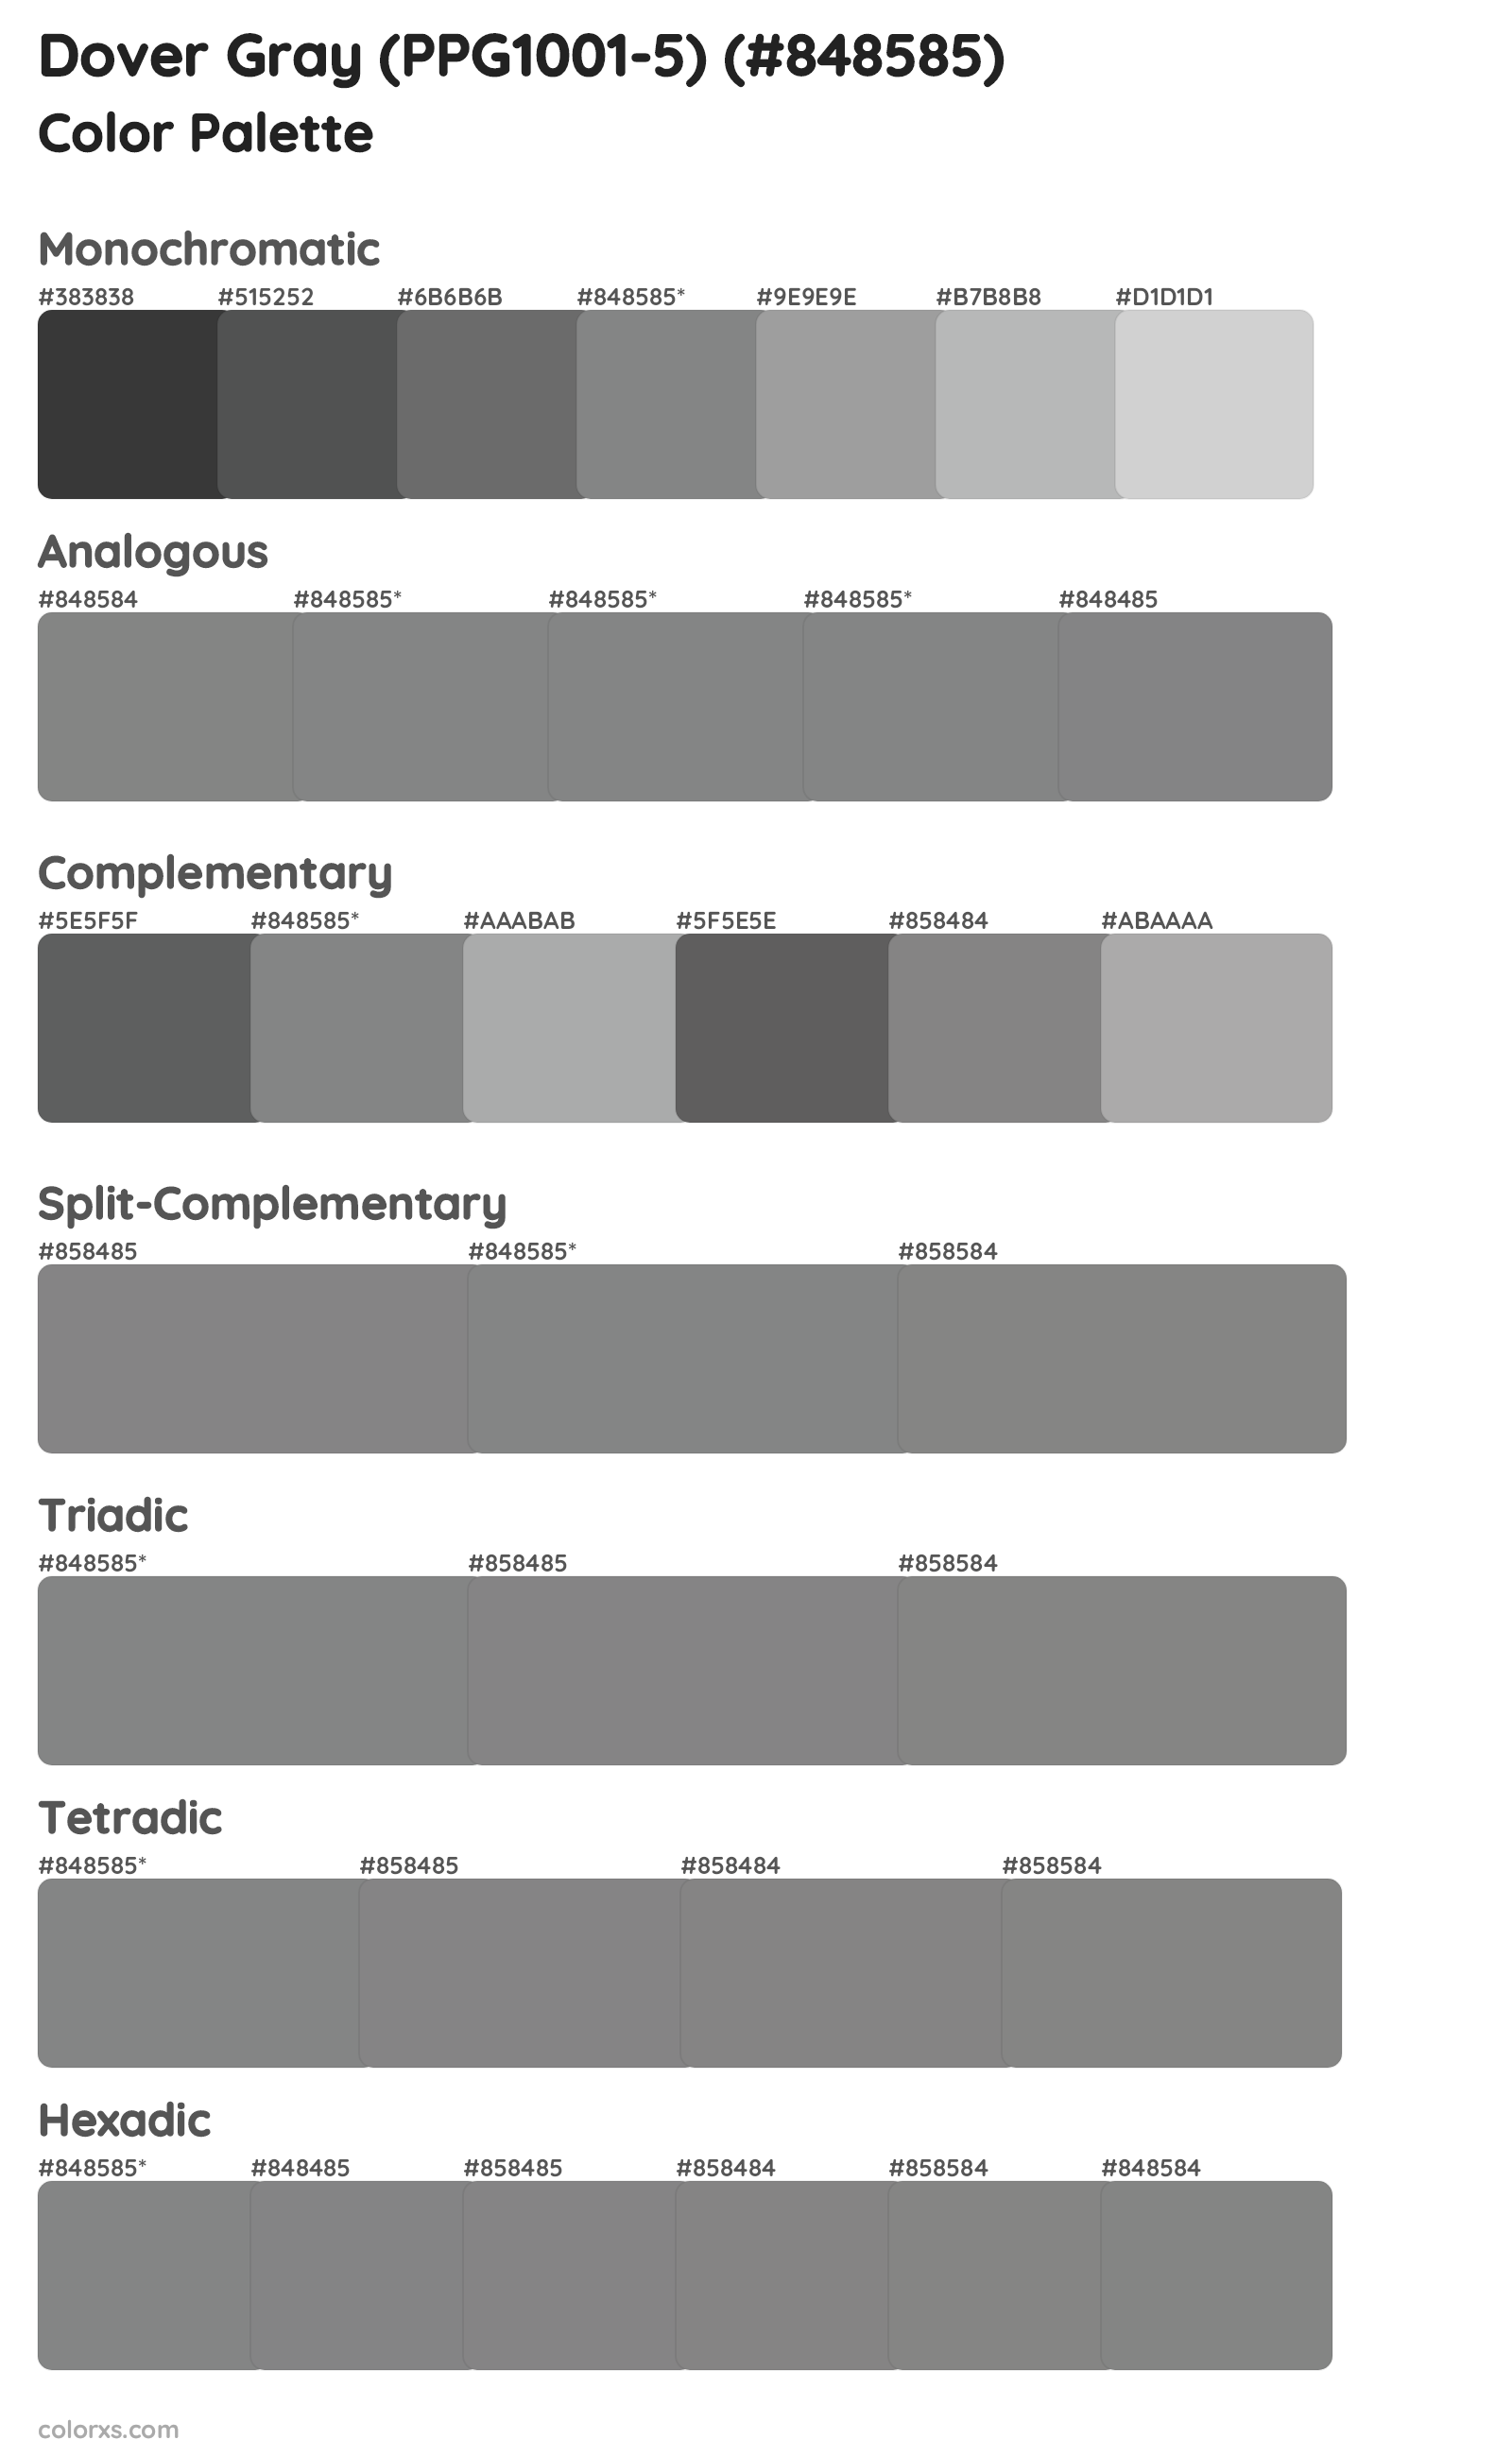 Dover Gray (PPG1001-5) Color Scheme Palettes